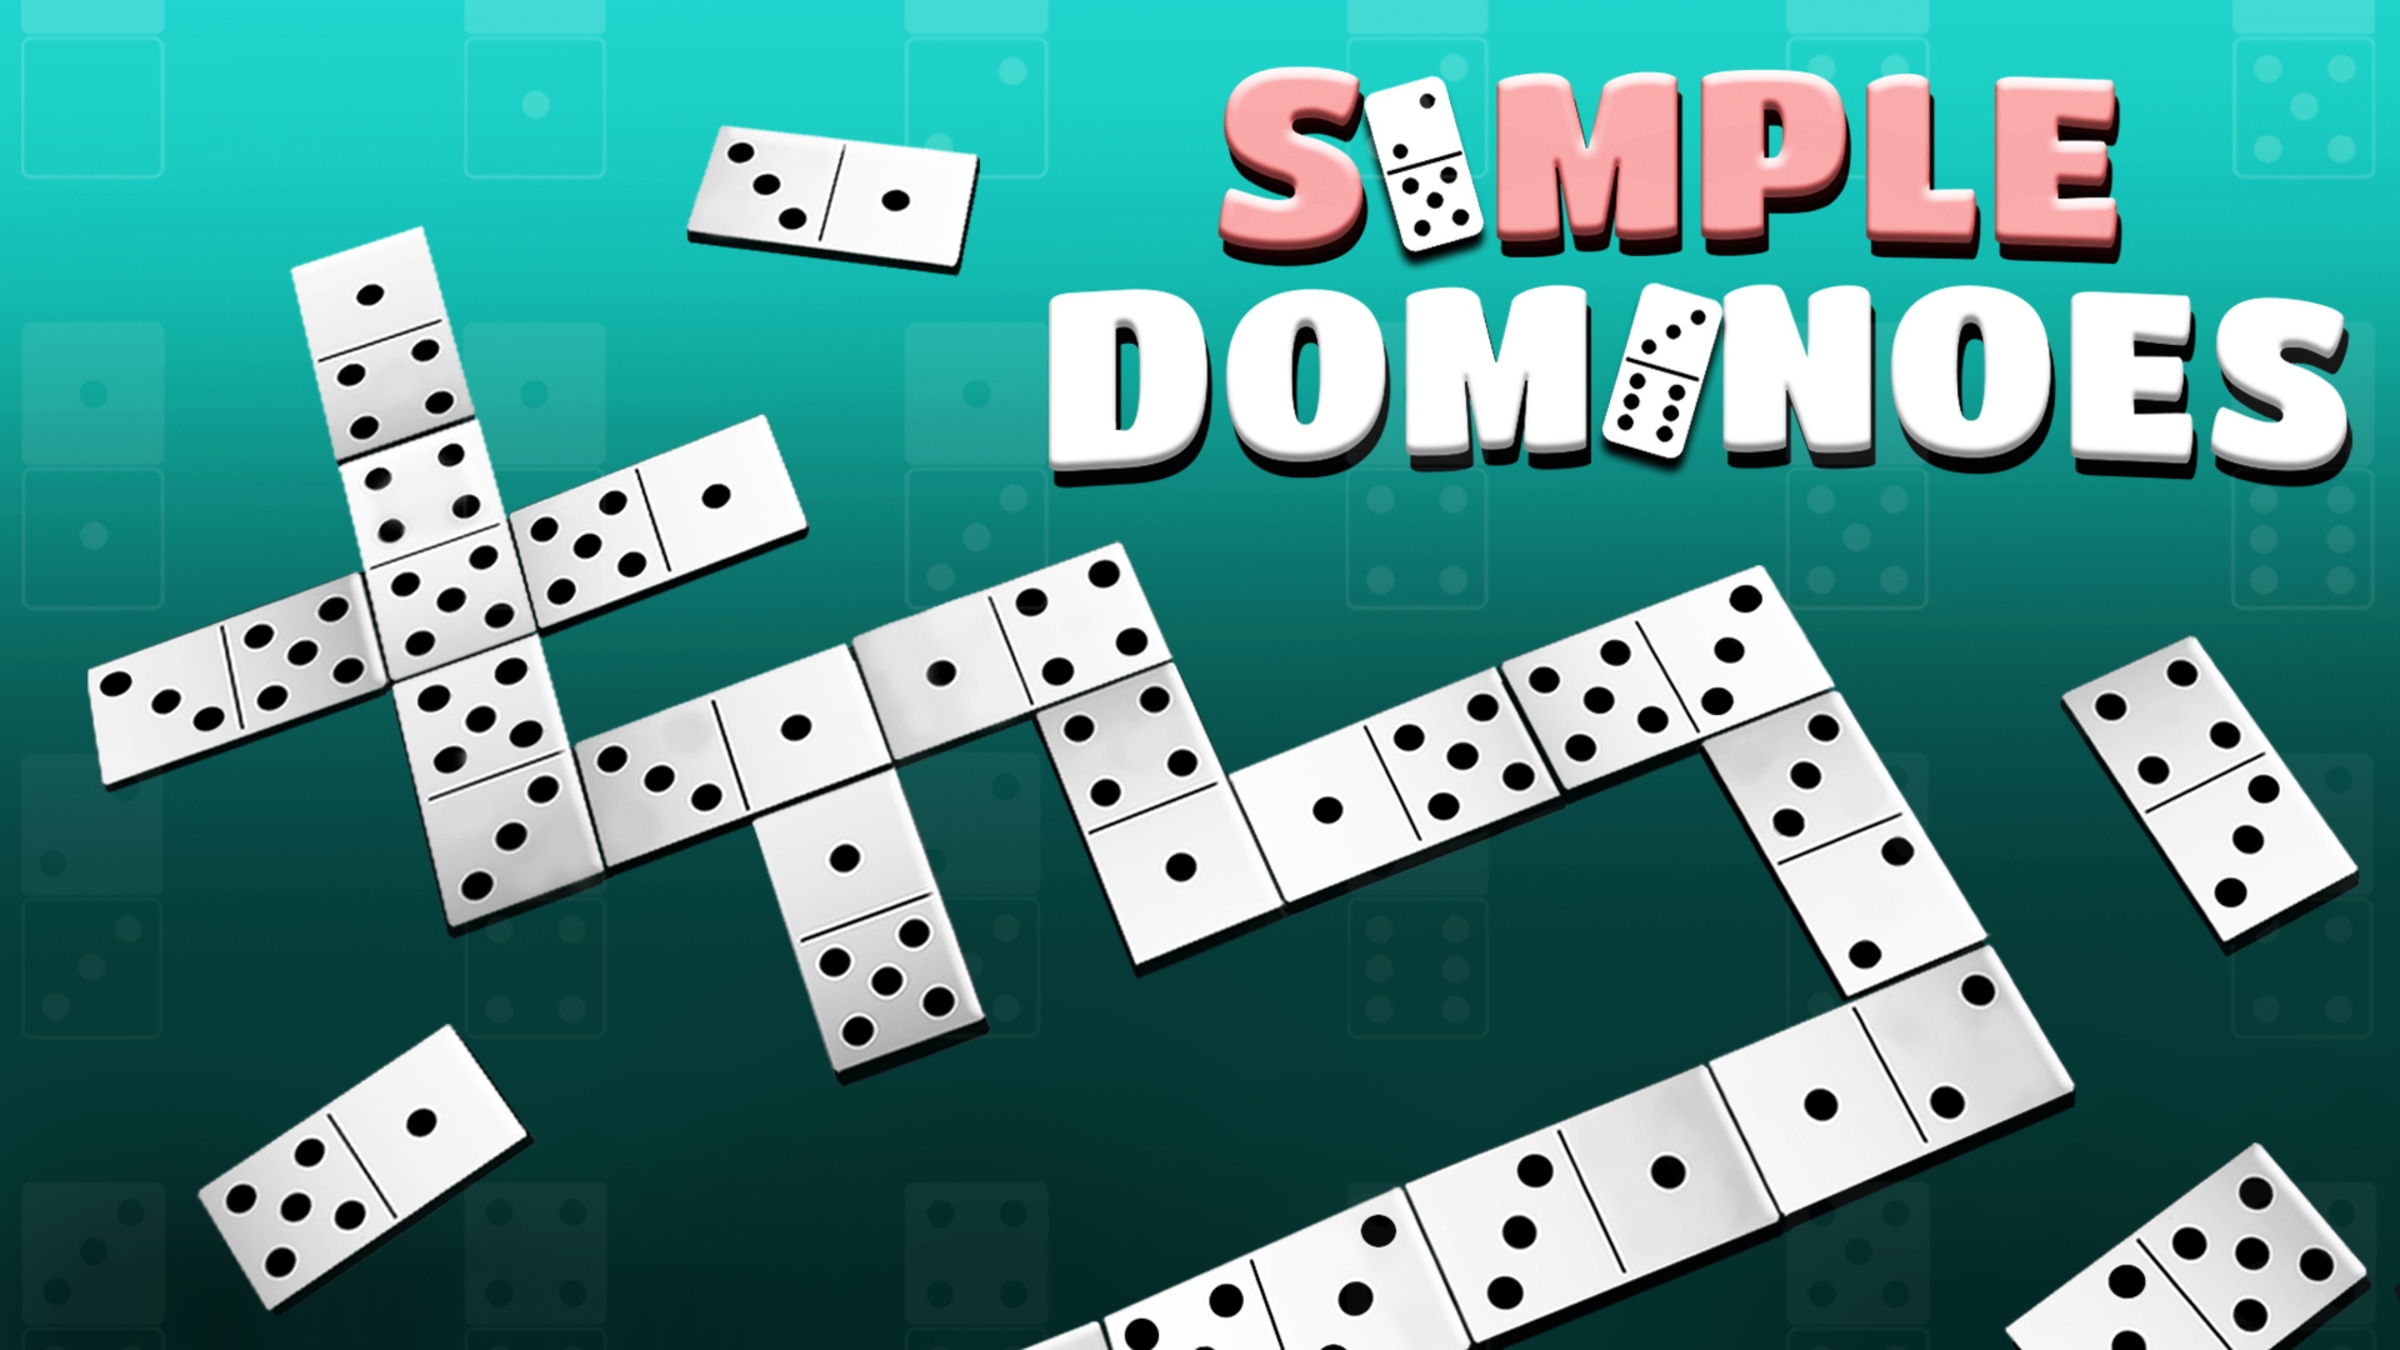 Block Domino Game Rules